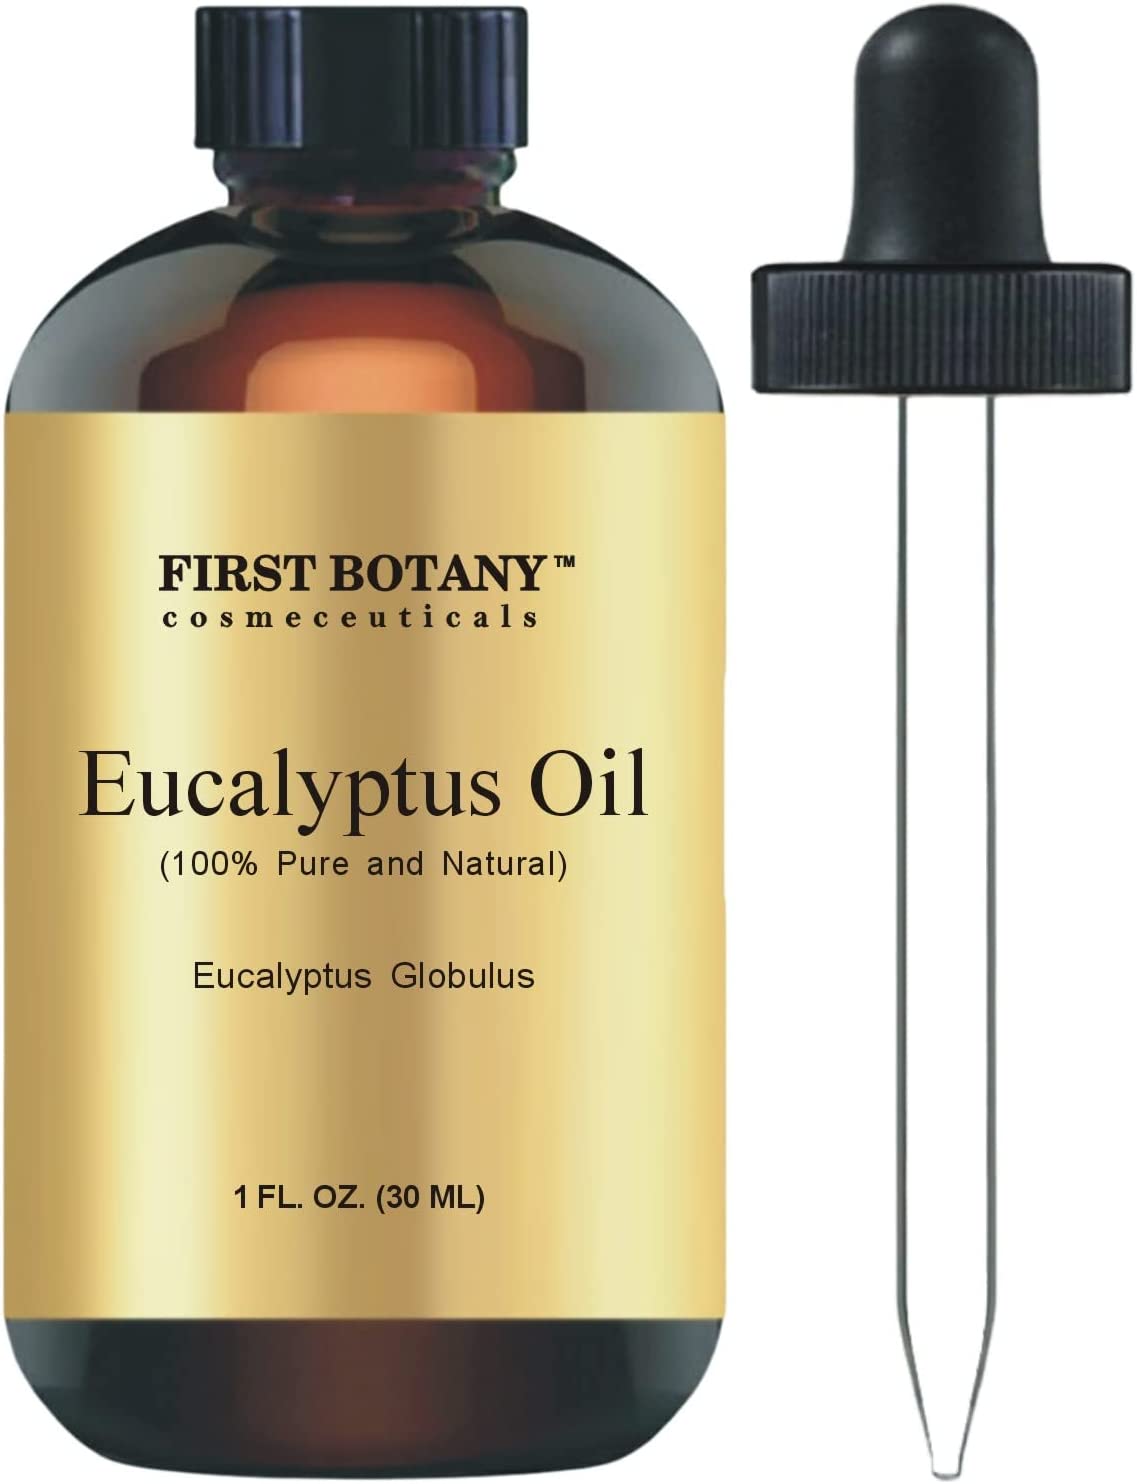 Now Essential Oils, Eucalyptus, 100% Pure - 1 fl oz